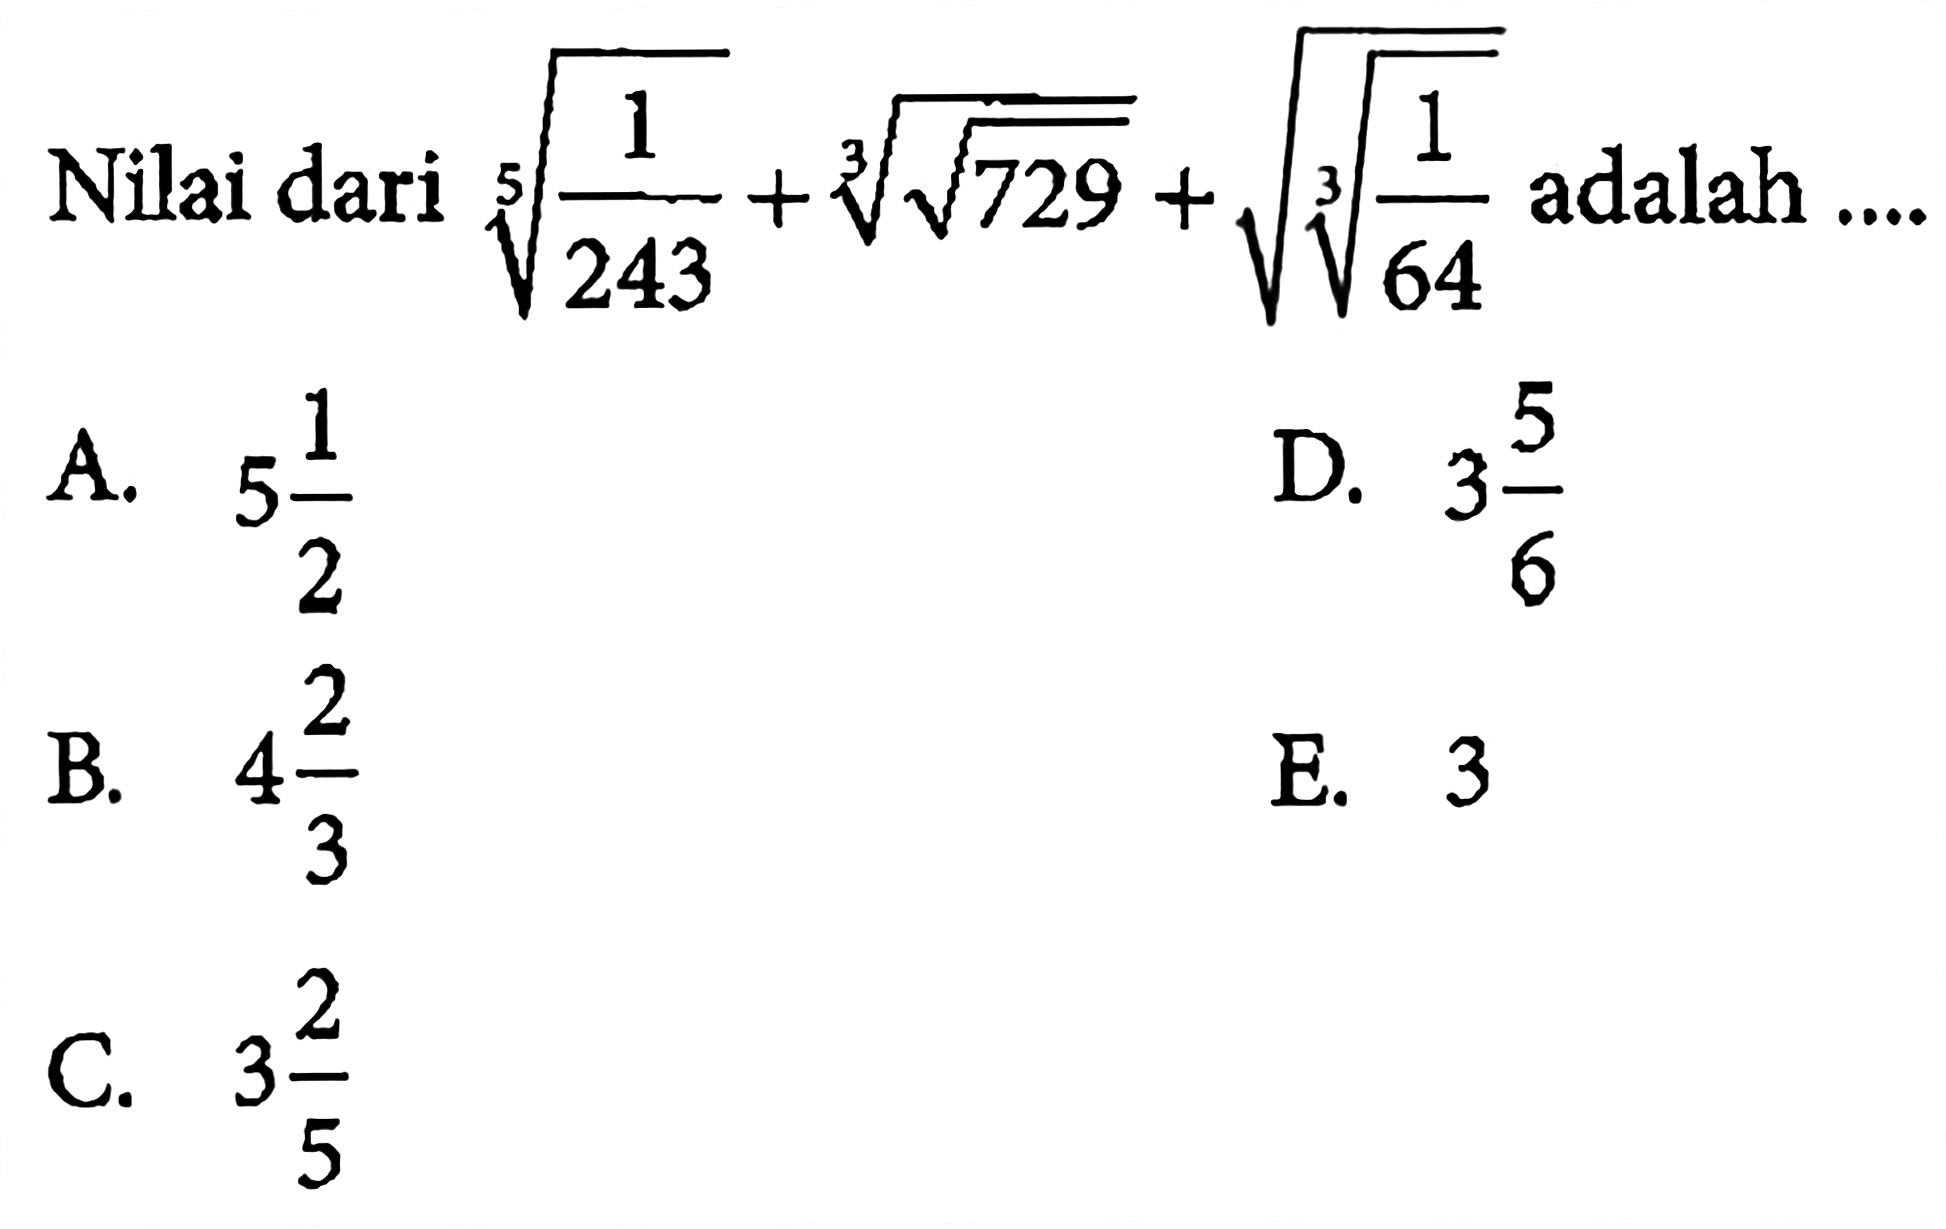 Nilai dari (1/243)^(1/5) + (akar(729))^(1/3) + akar((1/64)^(1/3)) adalah ....